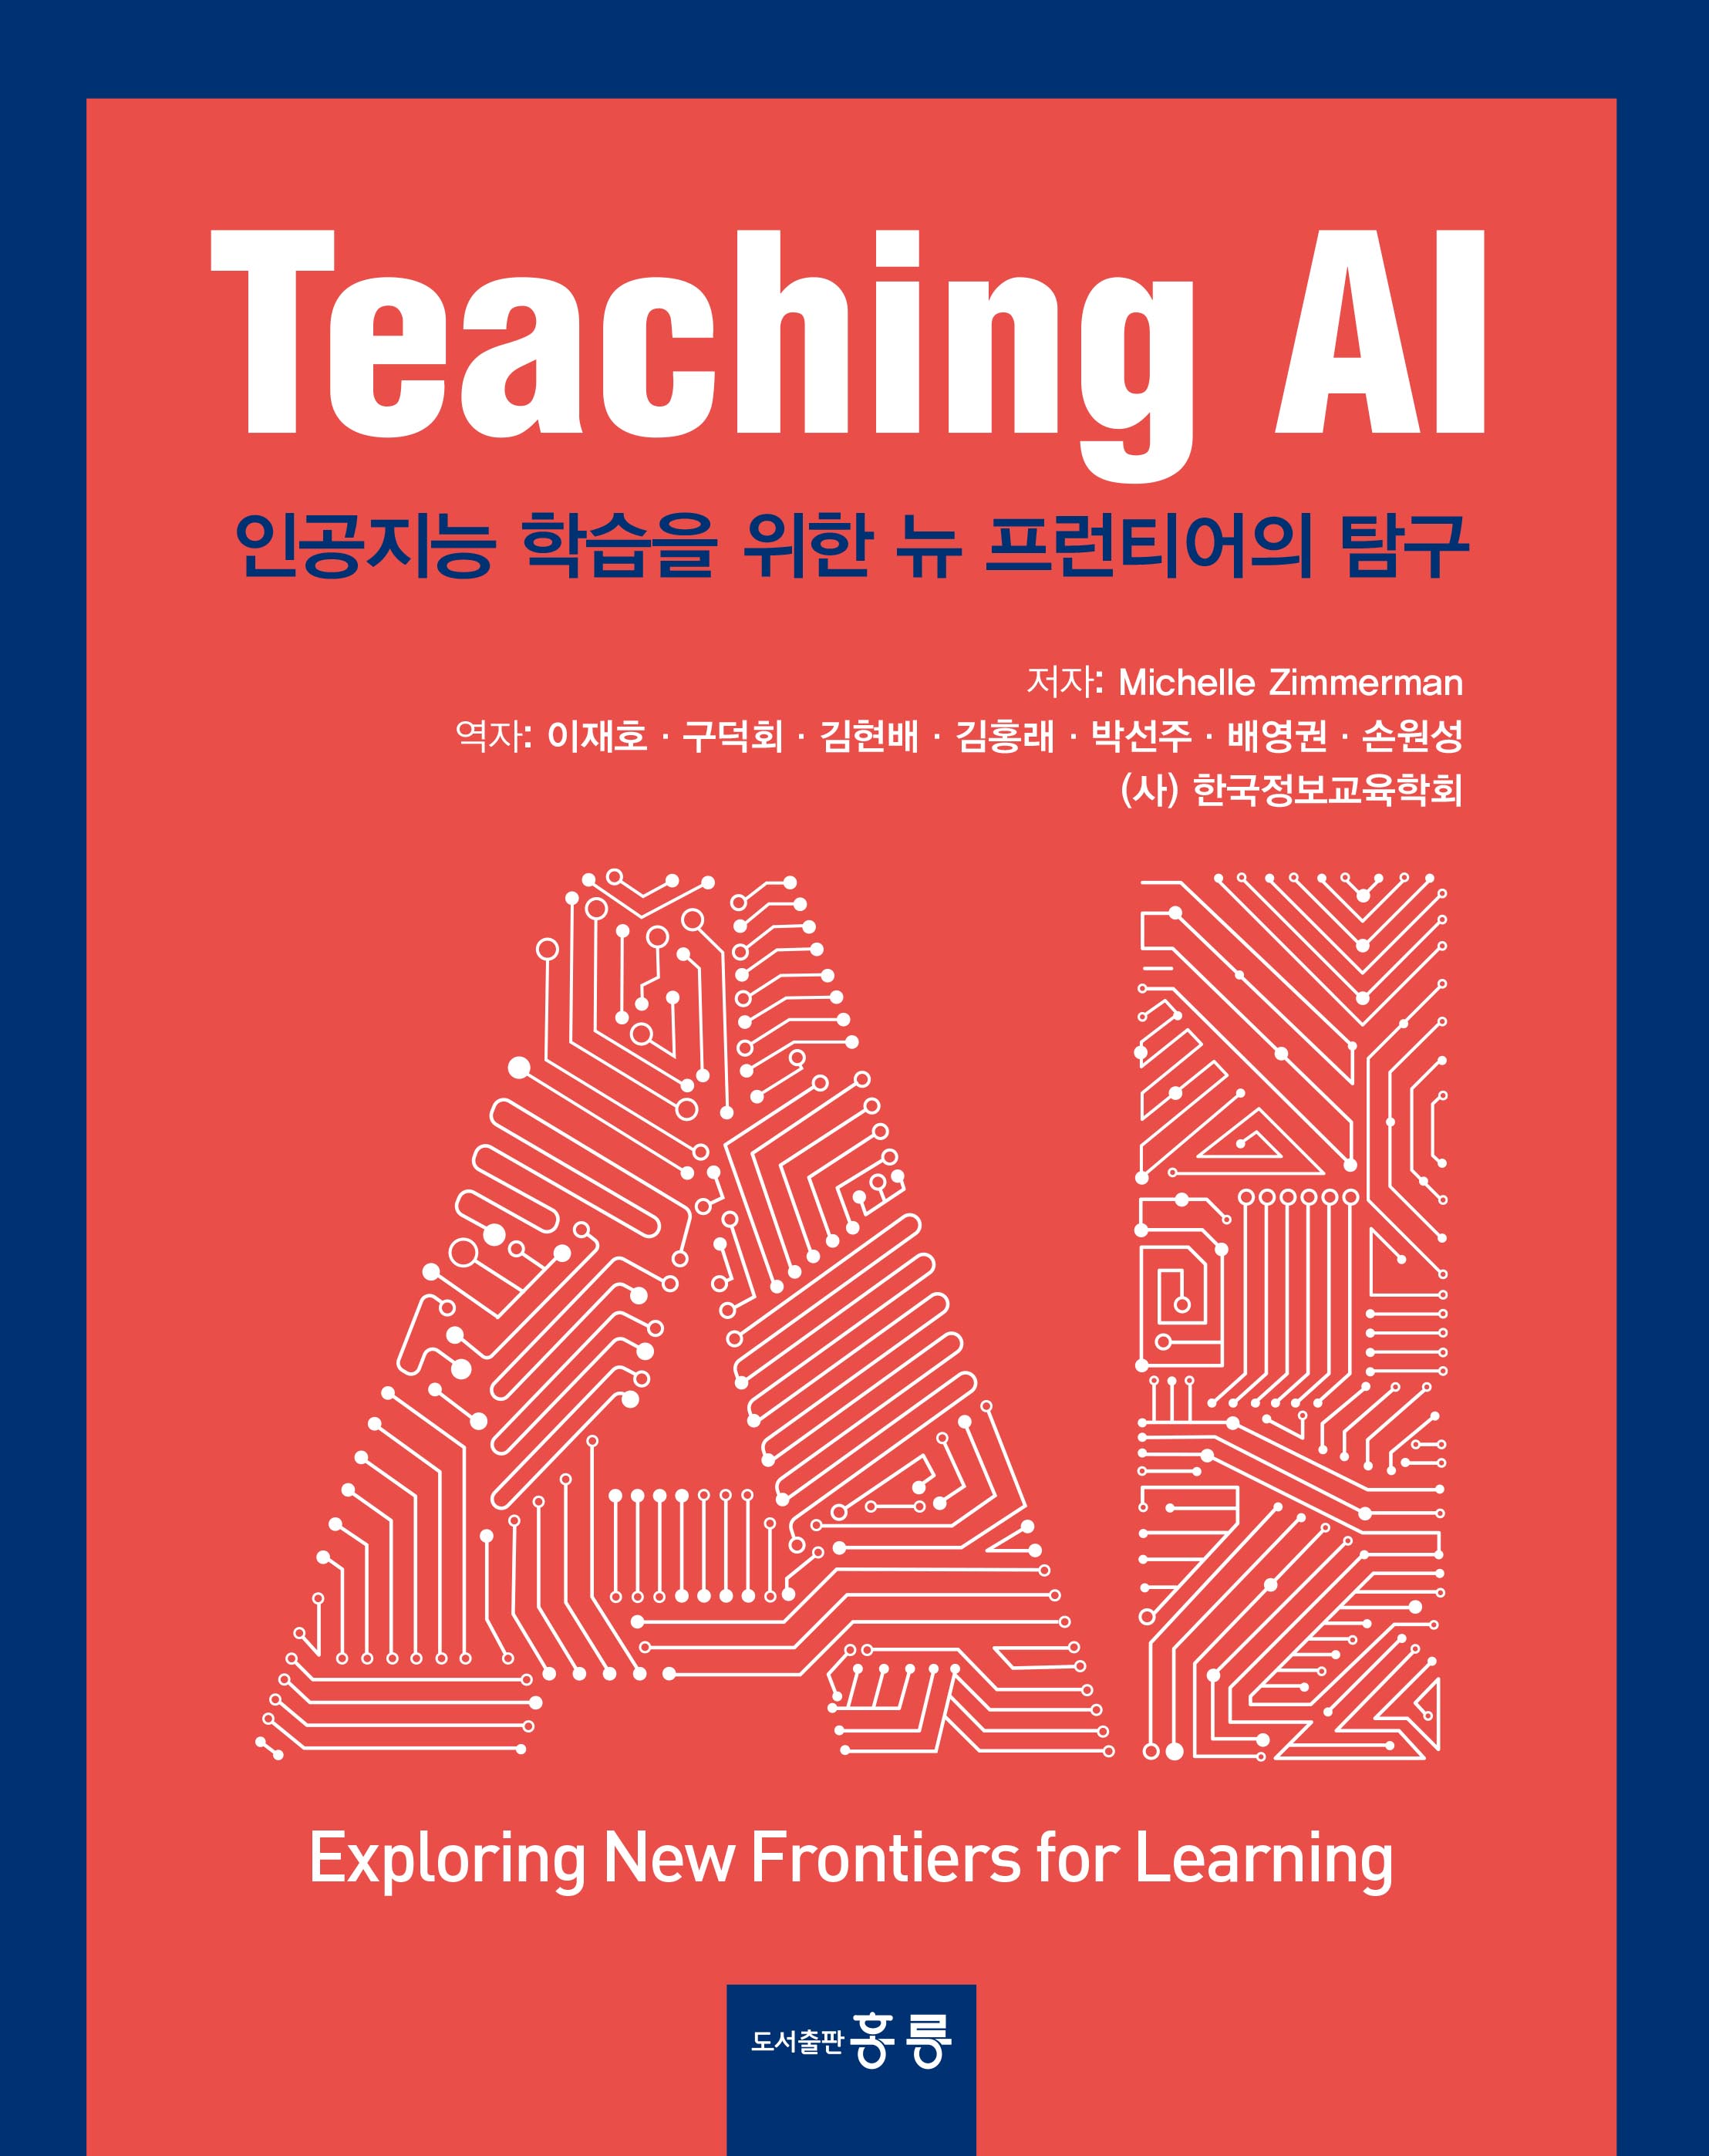 Teaching AI(한국어판) -인공지능 학습을 위한 뉴 프런티어의 탐구